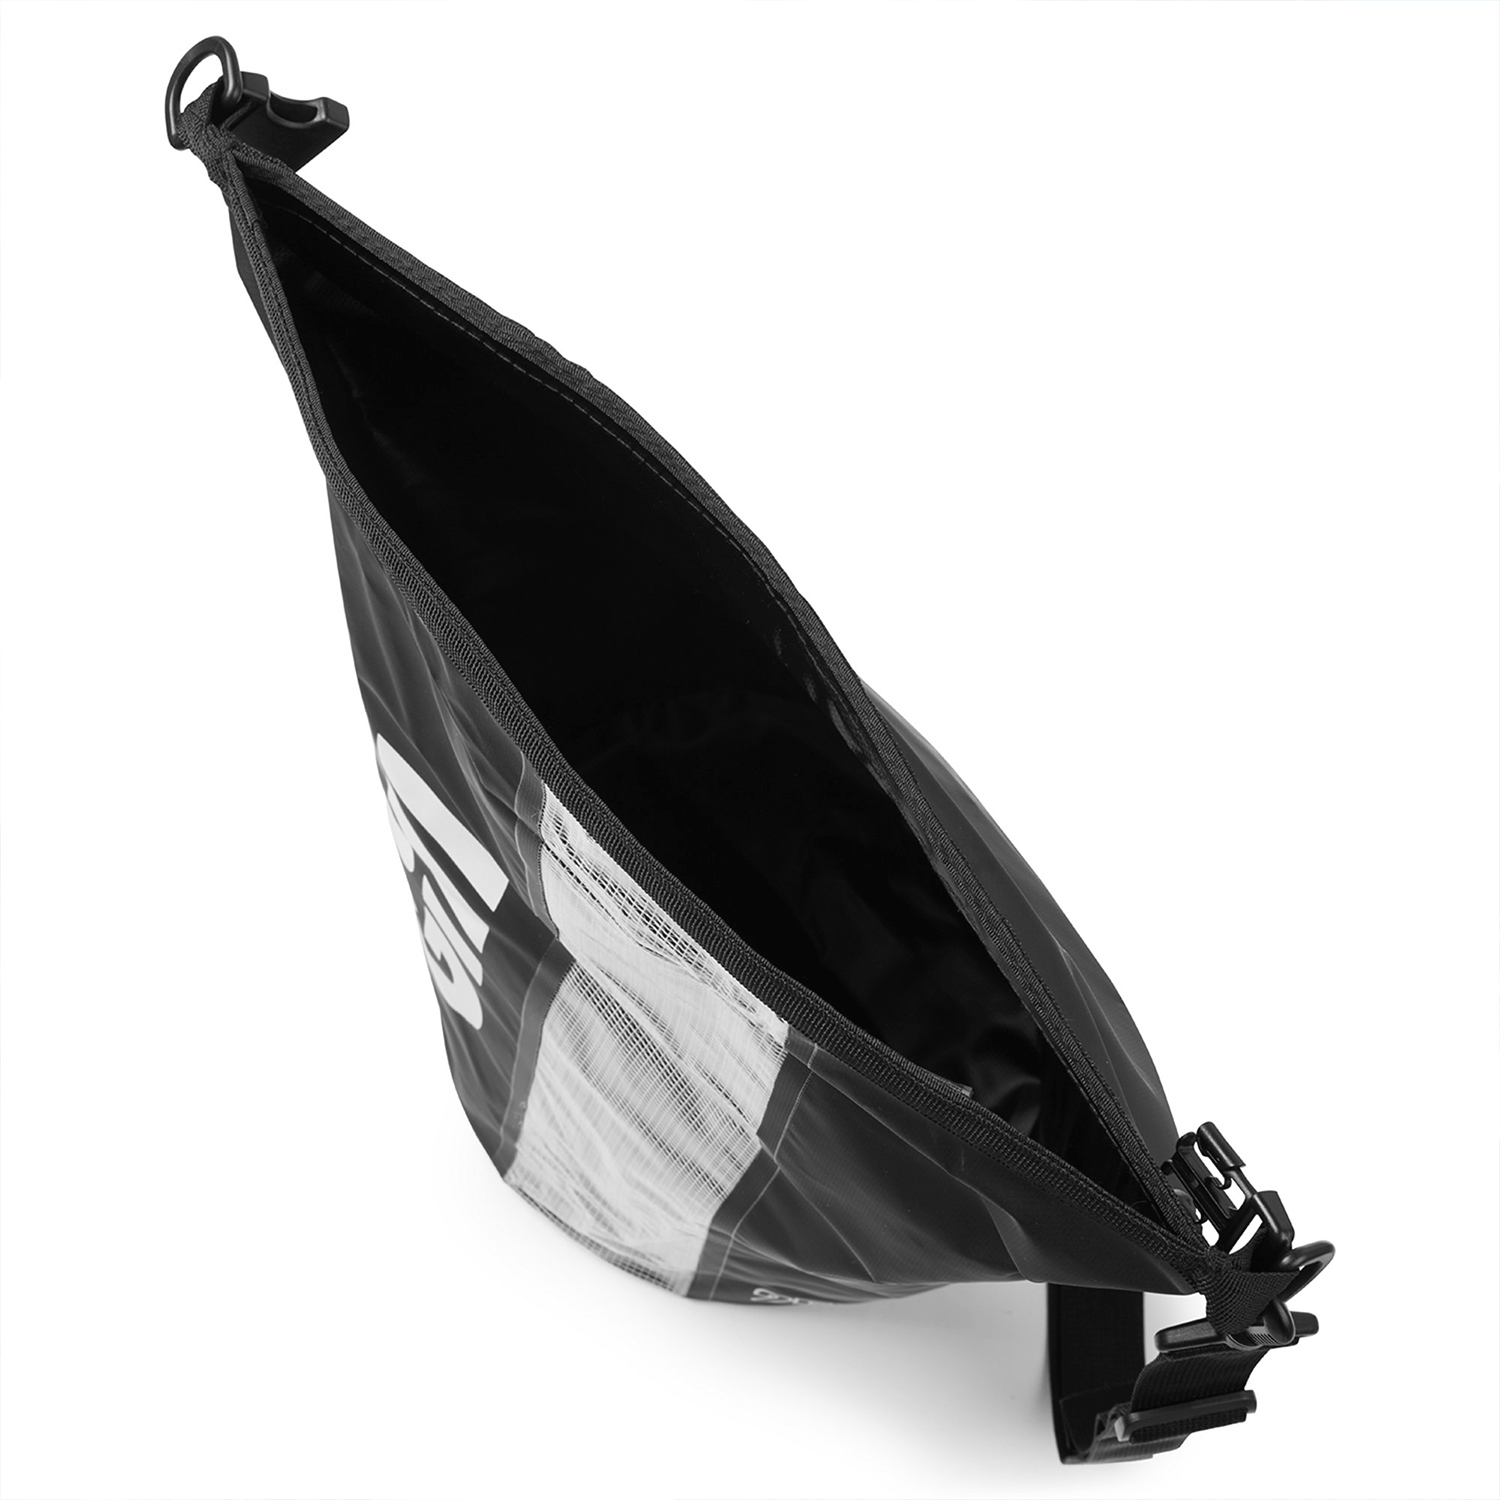 25L-Voyager-Dry-Bag-Black-3-Excel